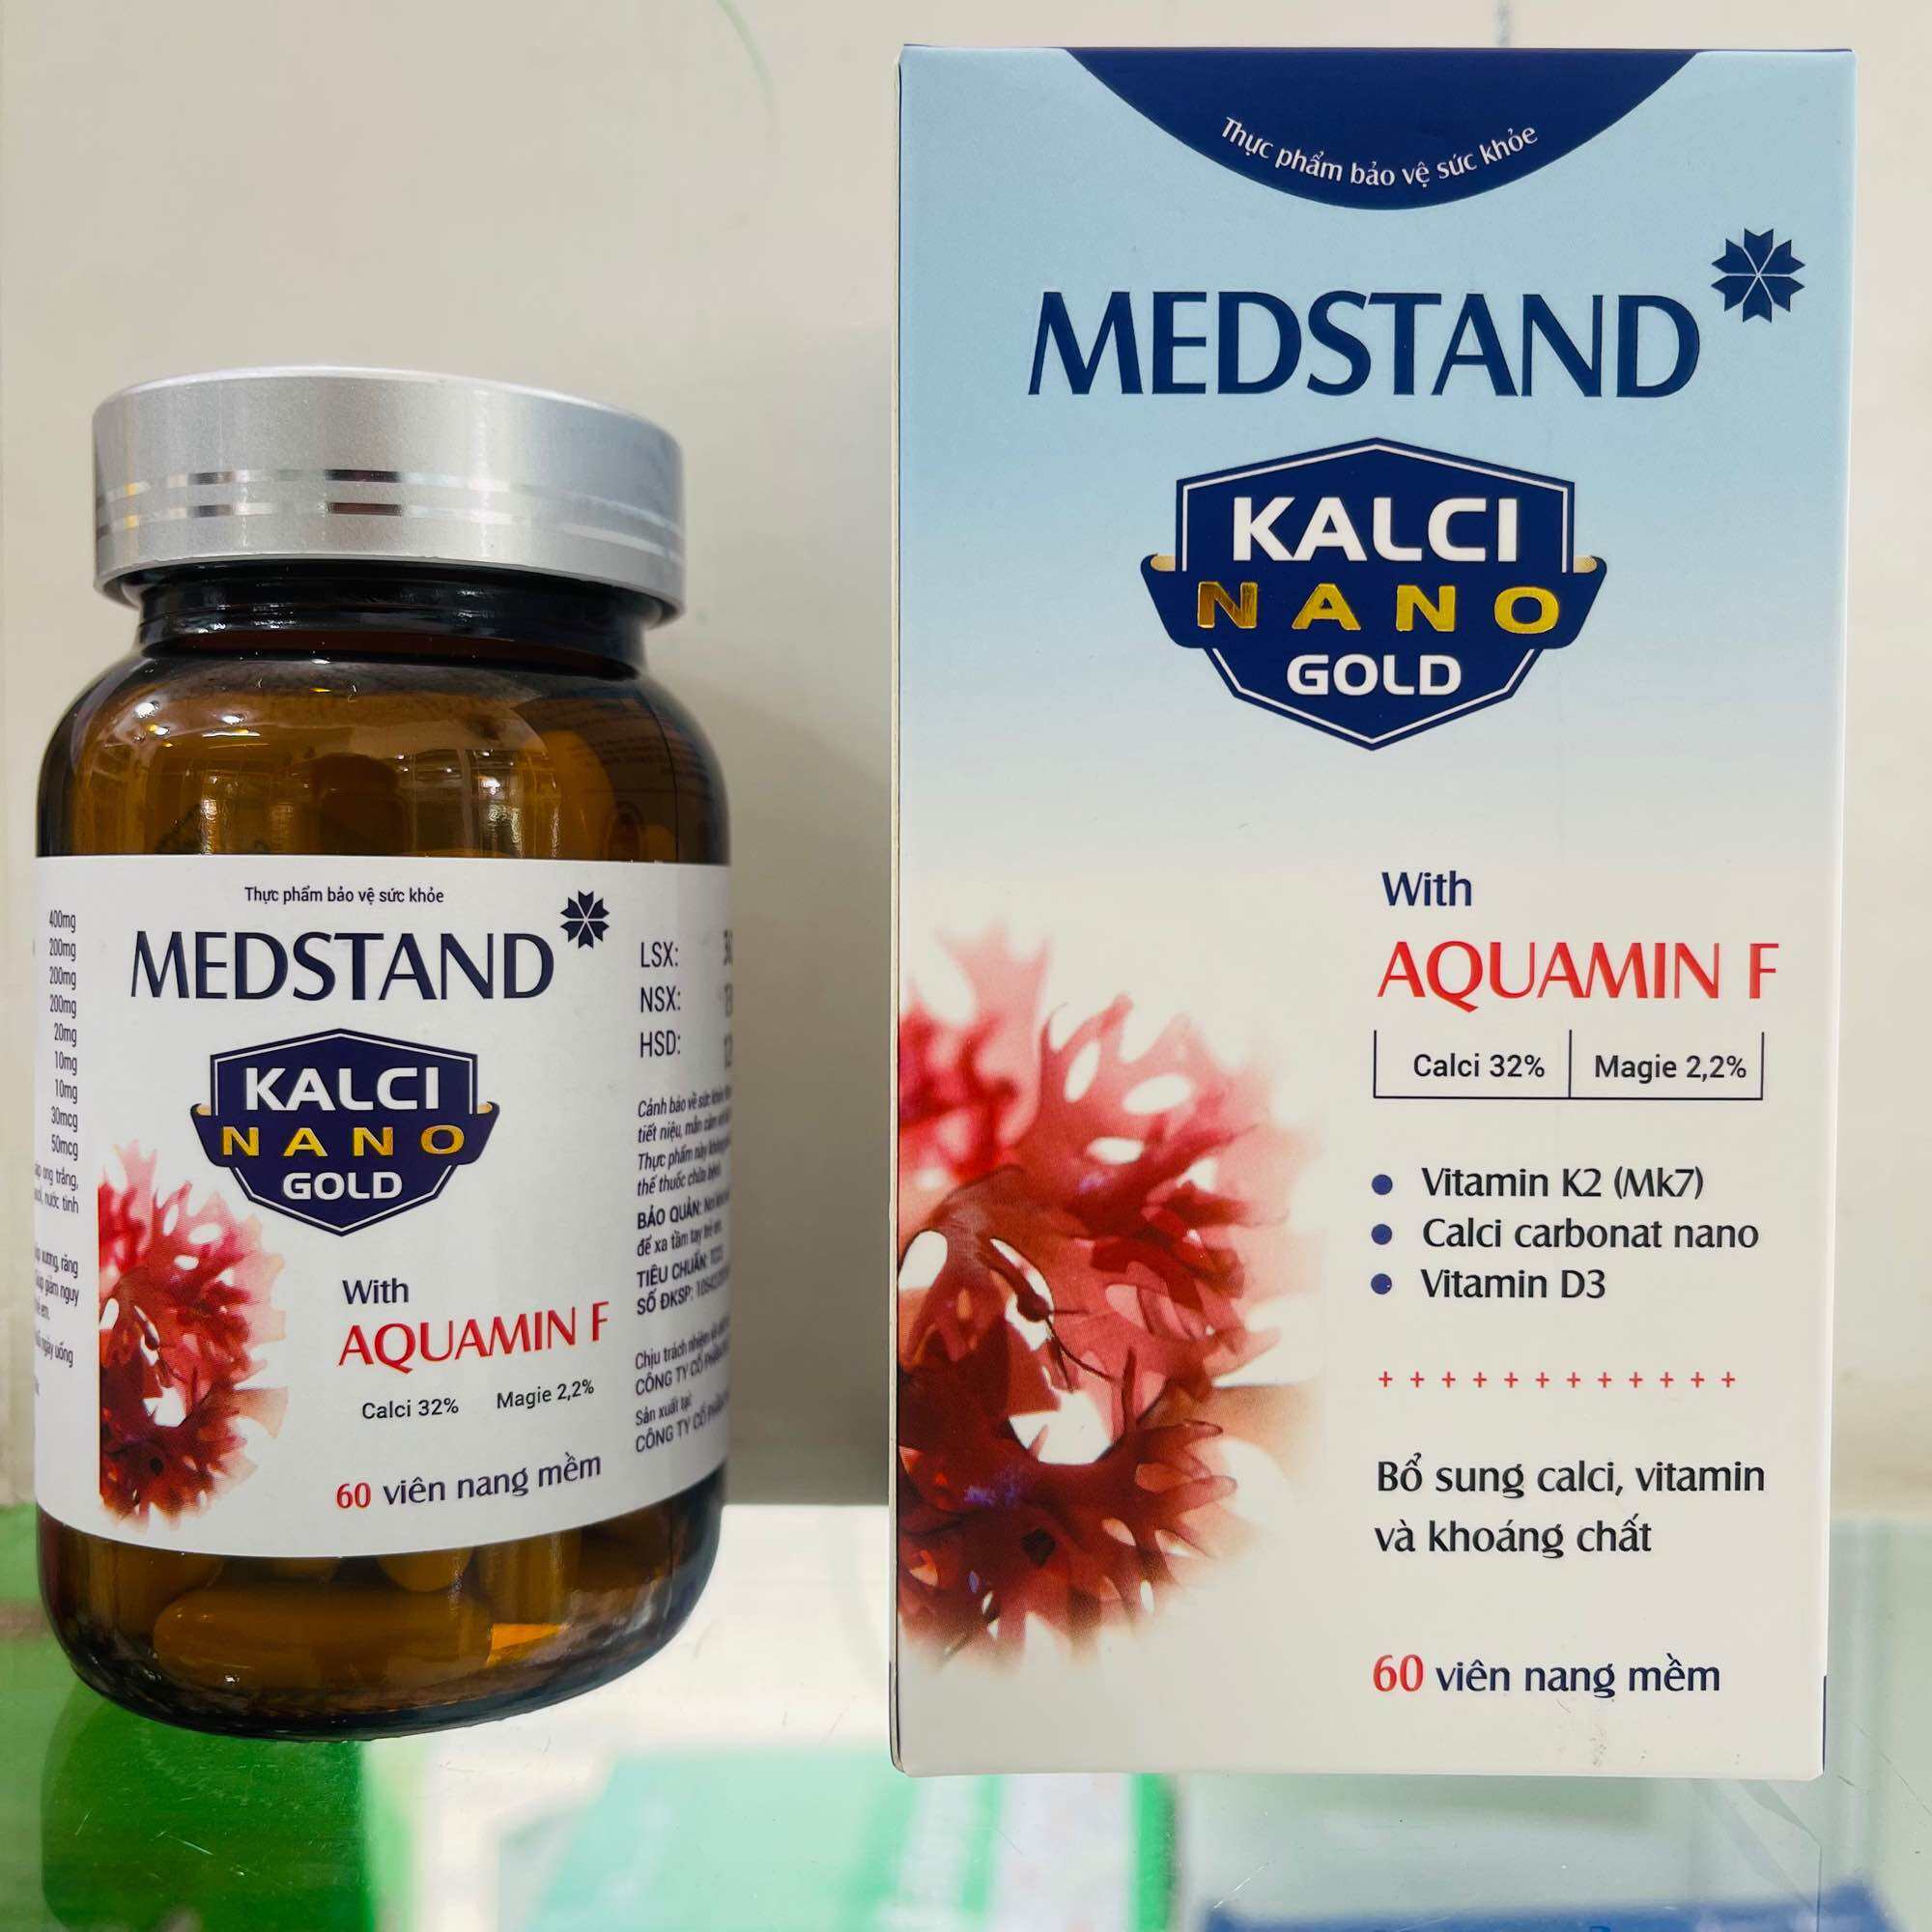 MEDSTAND Kalci Nano Gold hộp - 60 viên - bổ sung vitamin, calci và khoáng chất